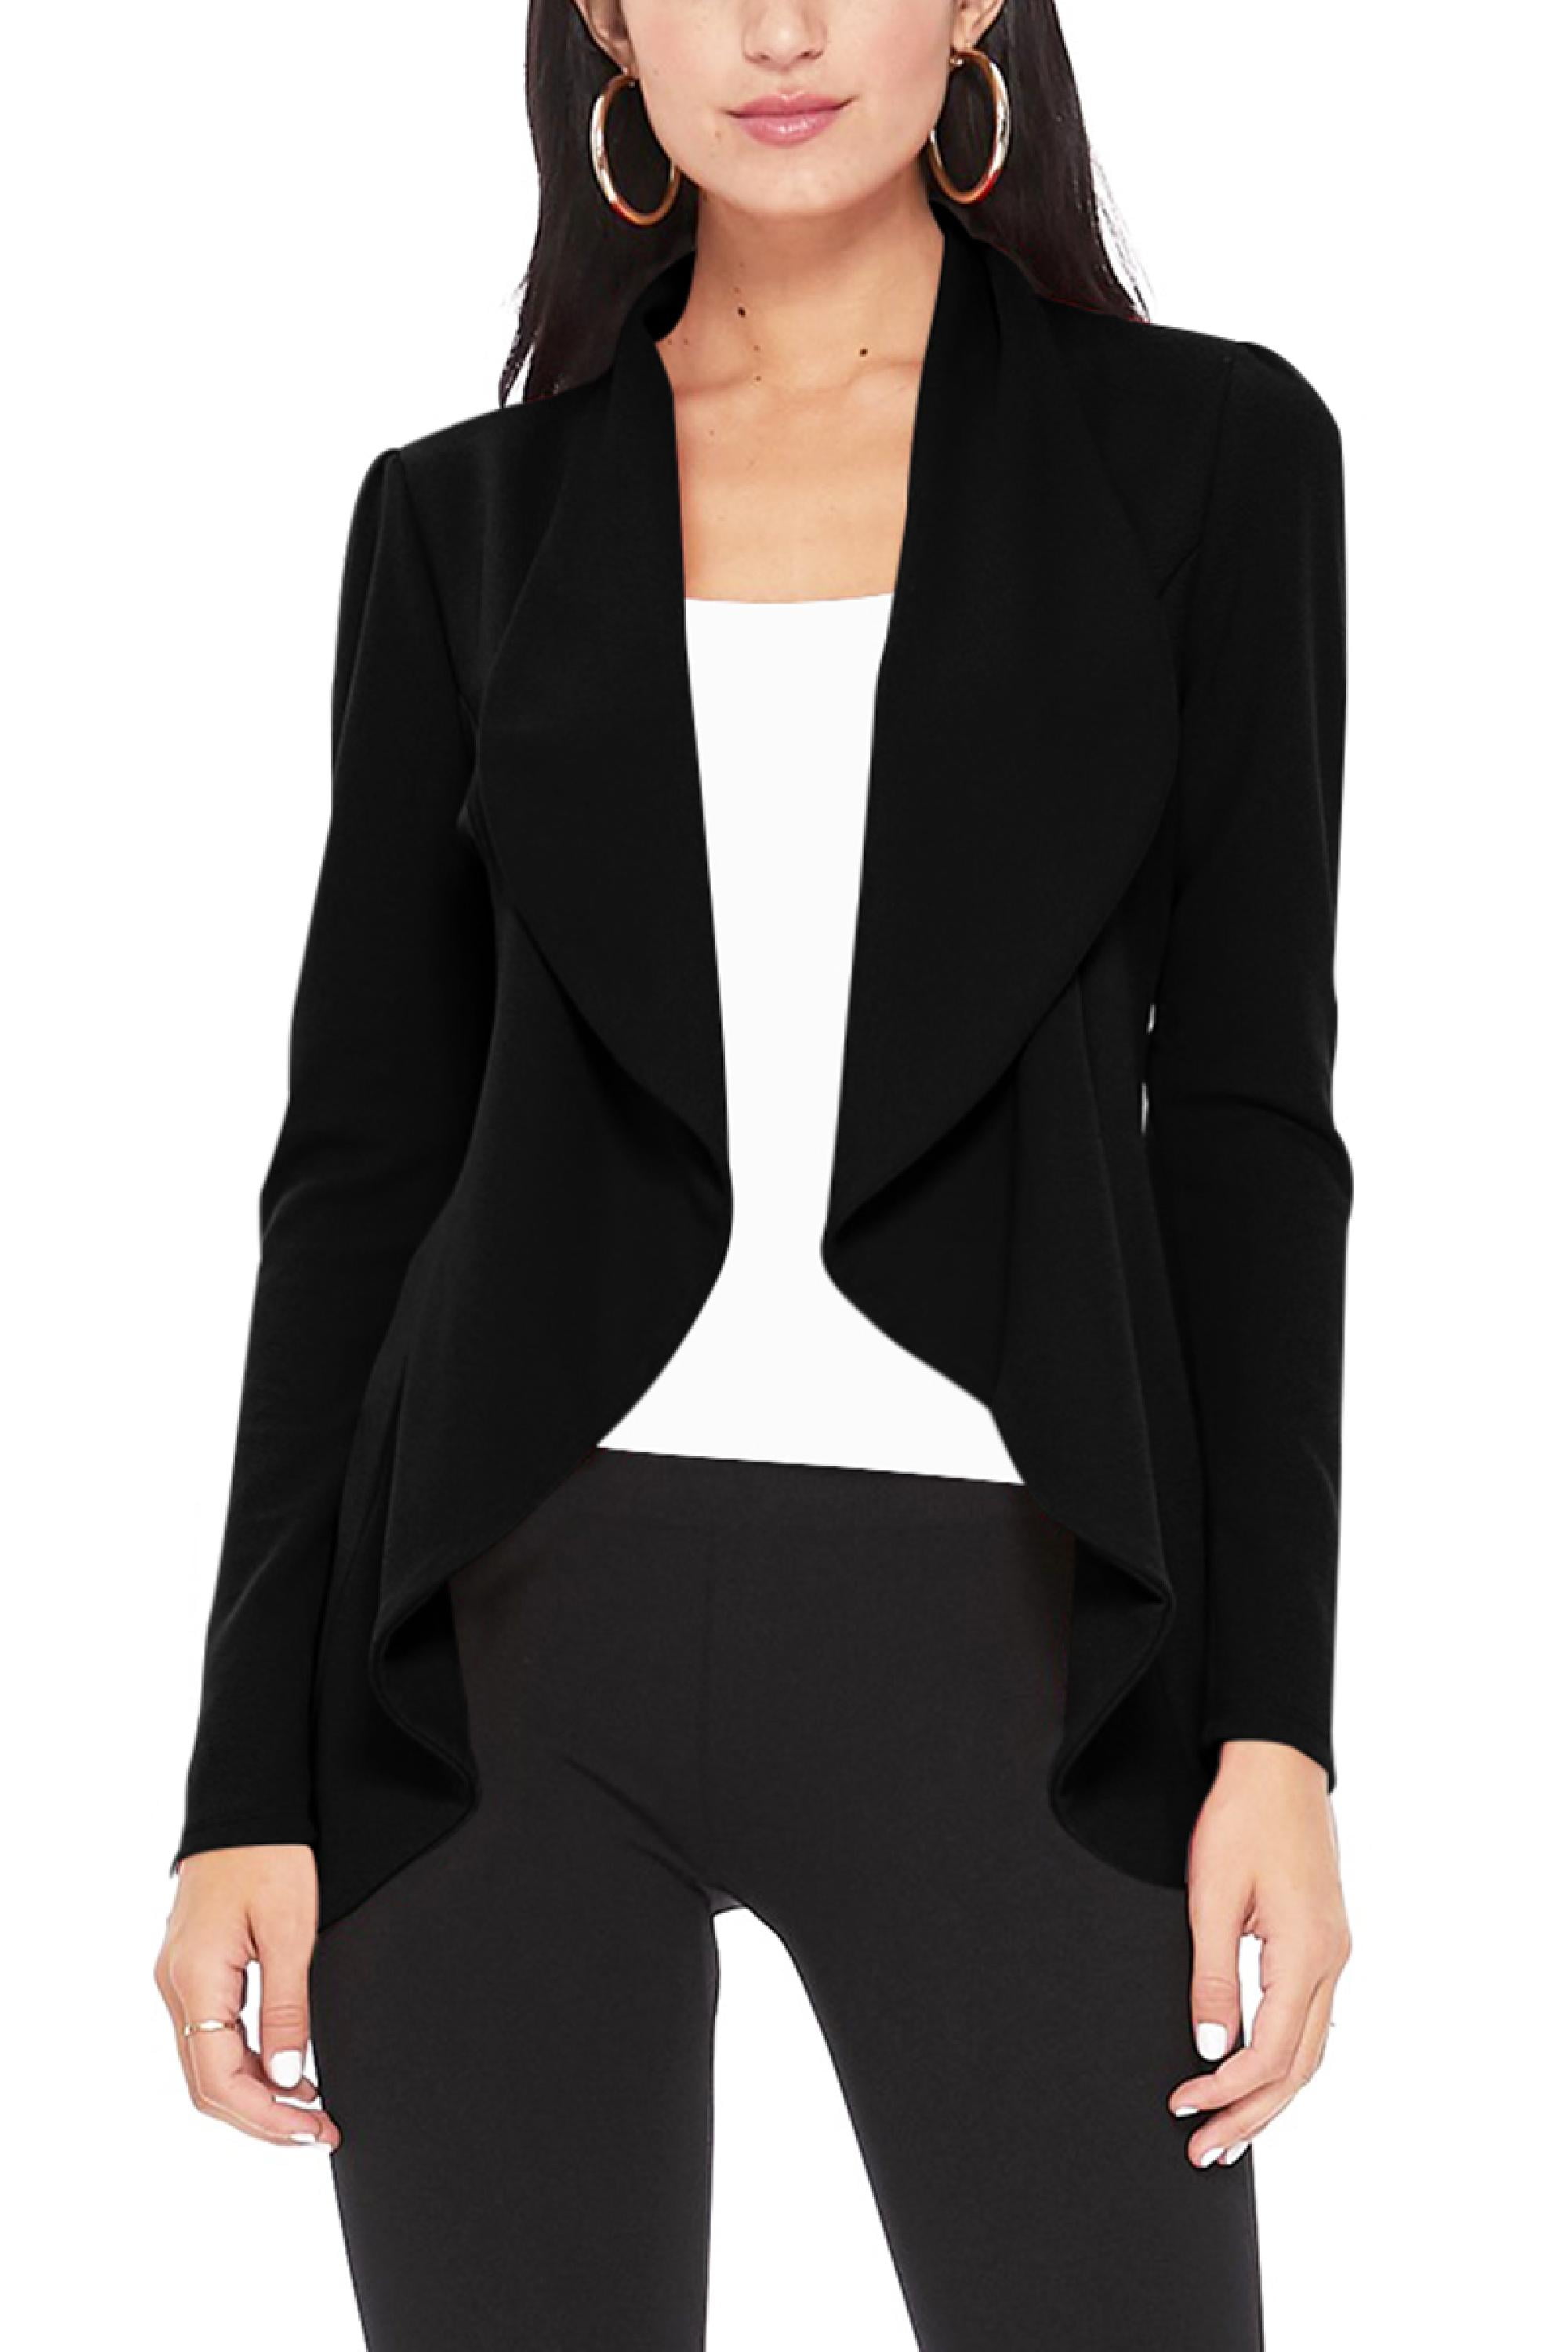 Women's Casual Long Sleeves Open Front Office Wear Solid Blazer Jacket ...